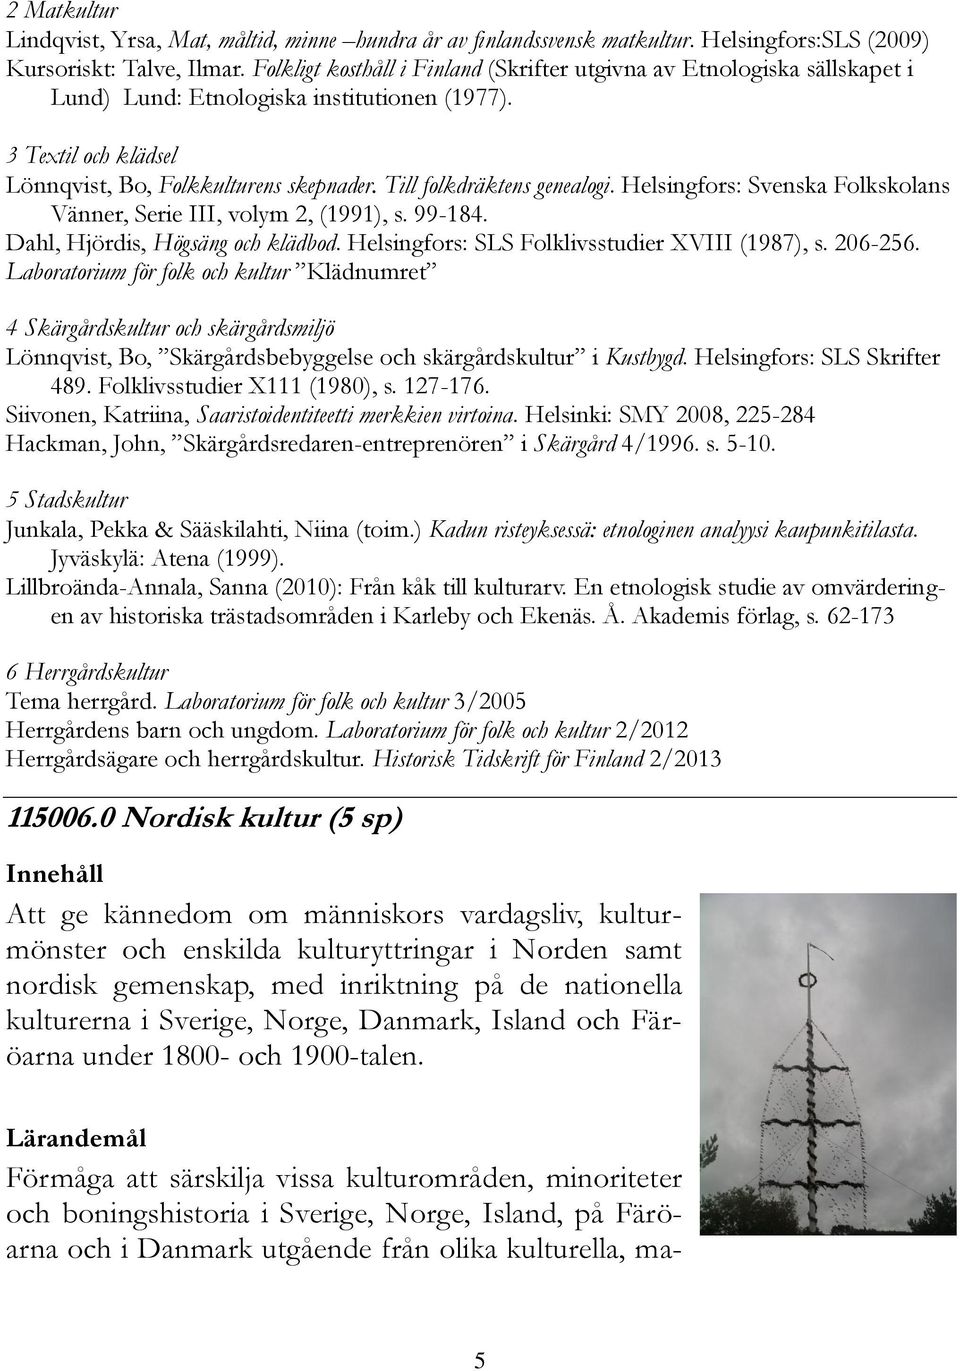 Till folkdräktens genealogi. Helsingfors: Svenska Folkskolans Vänner, Serie III, volym 2, (1991), s. 99-184. Dahl, Hjördis, Högsäng och klädbod. Helsingfors: SLS Folklivsstudier XVIII (1987), s.